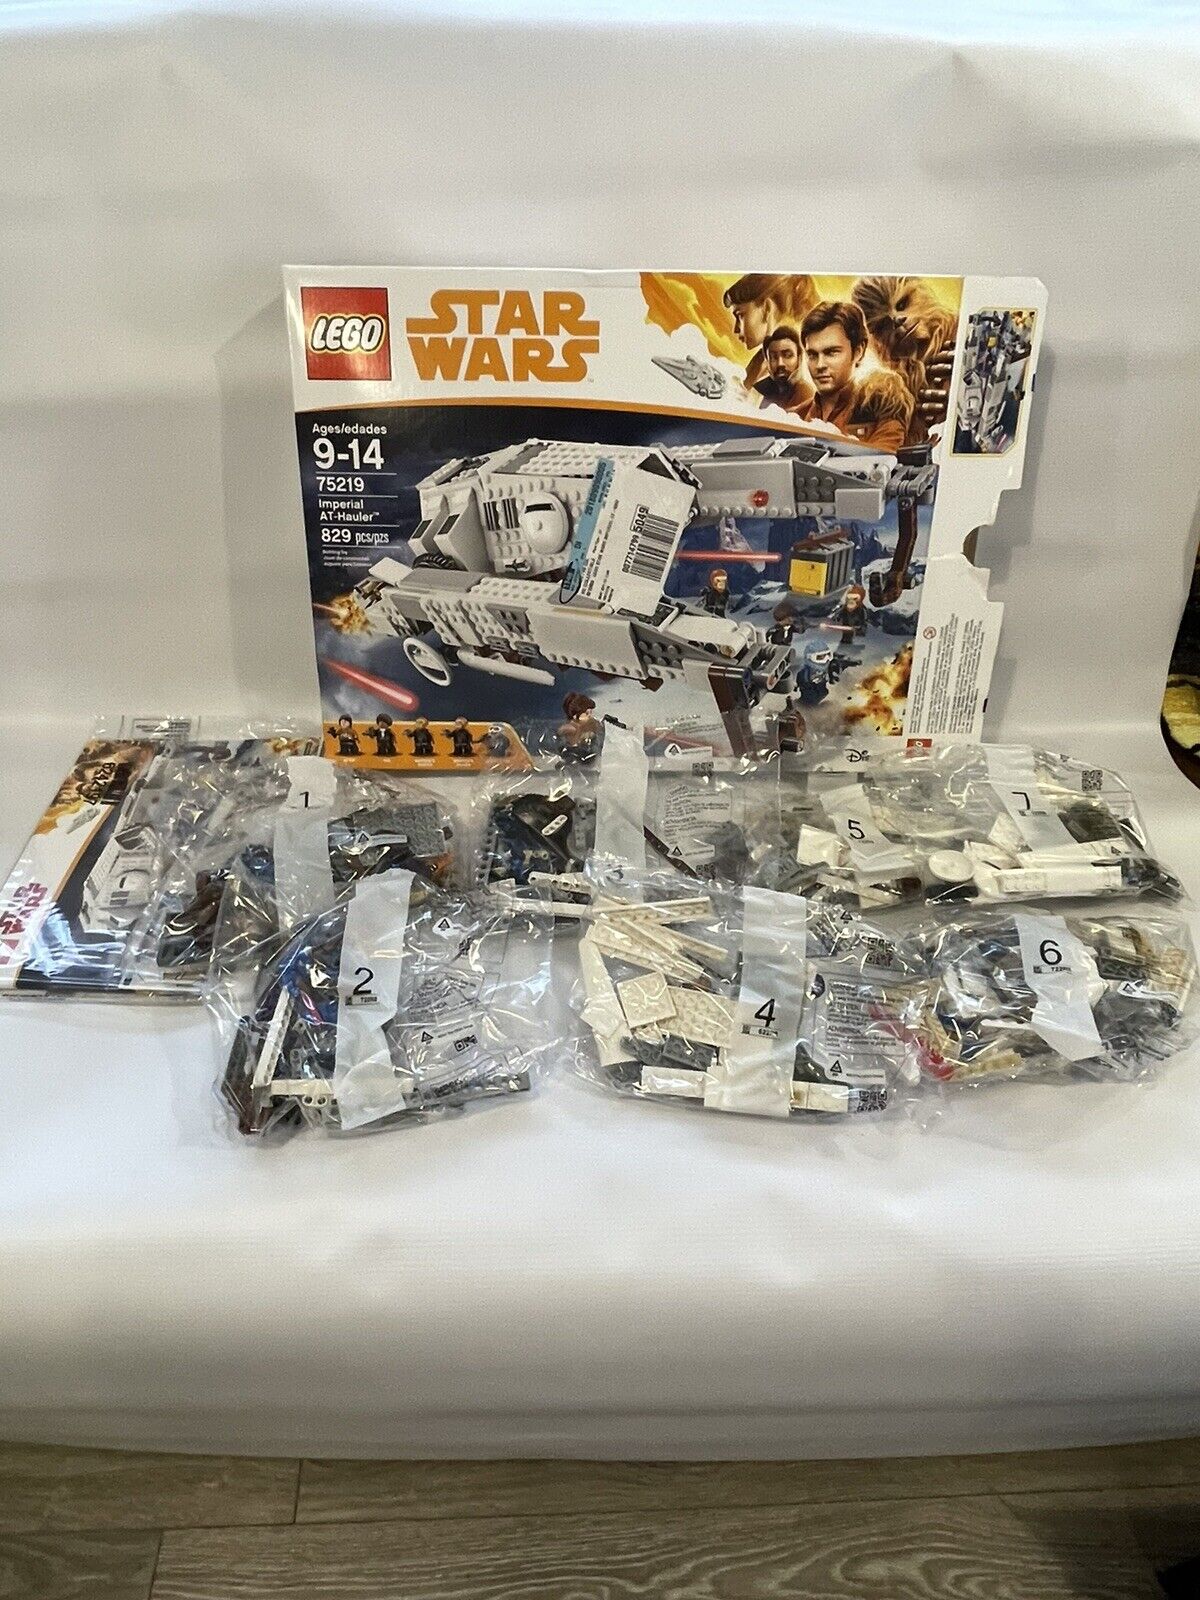 Installere medarbejder fungere LEGO Star Wars 75219 - Imperial AT-Hauler 673419282345 | eBay